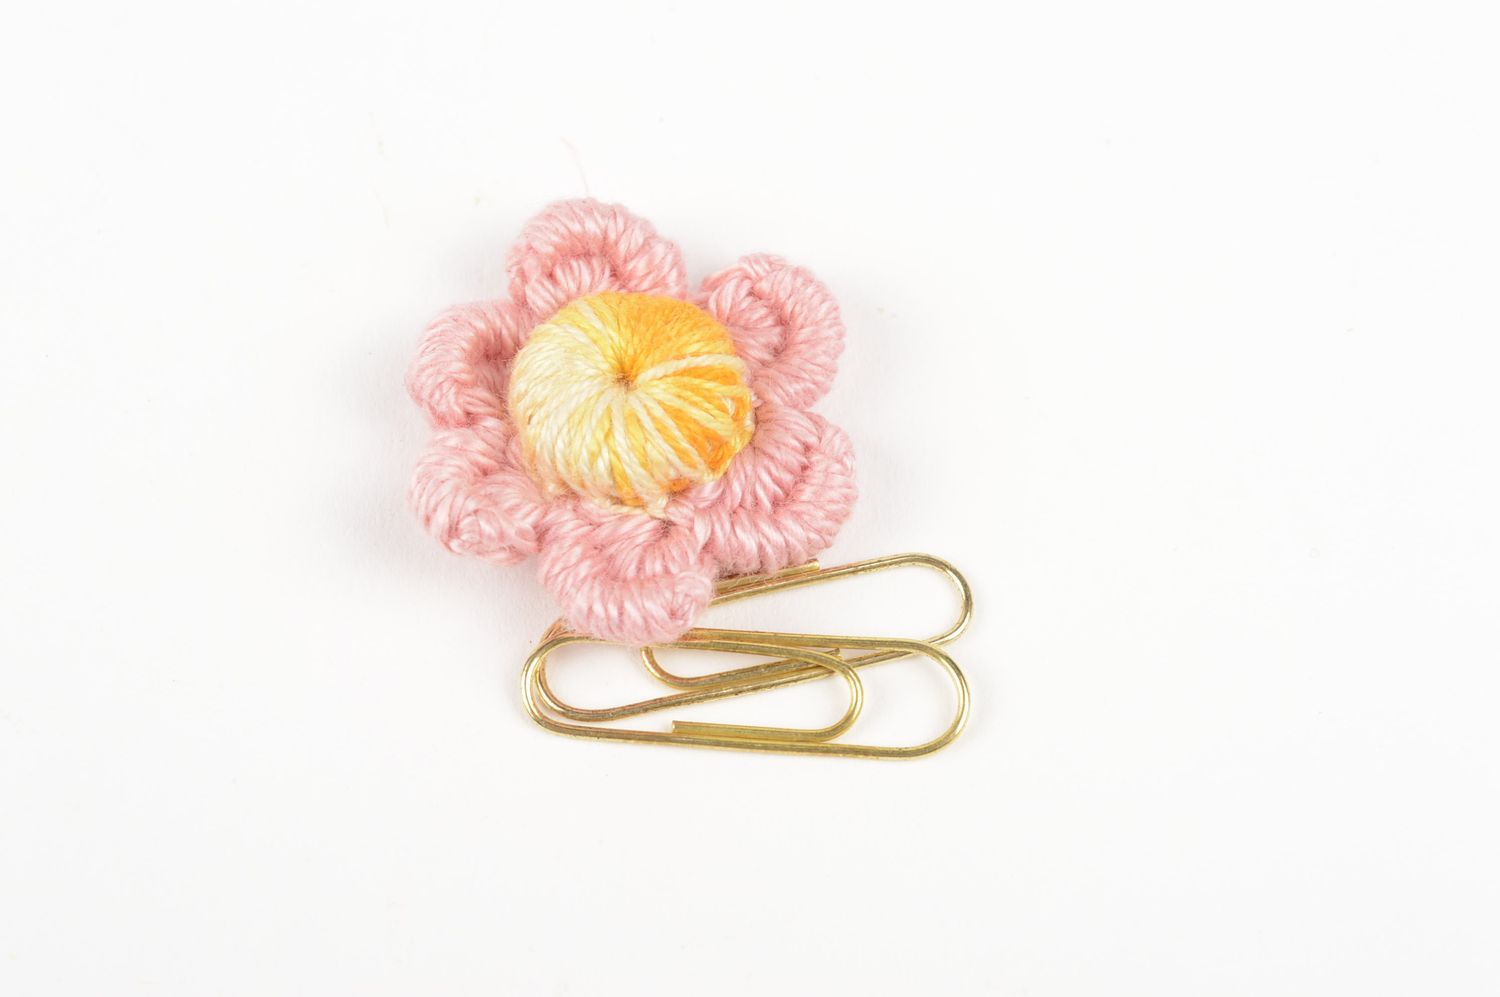 Фурнитура для бижутерии handmade цветок из ниток заготовка для броши для женщин фото 5